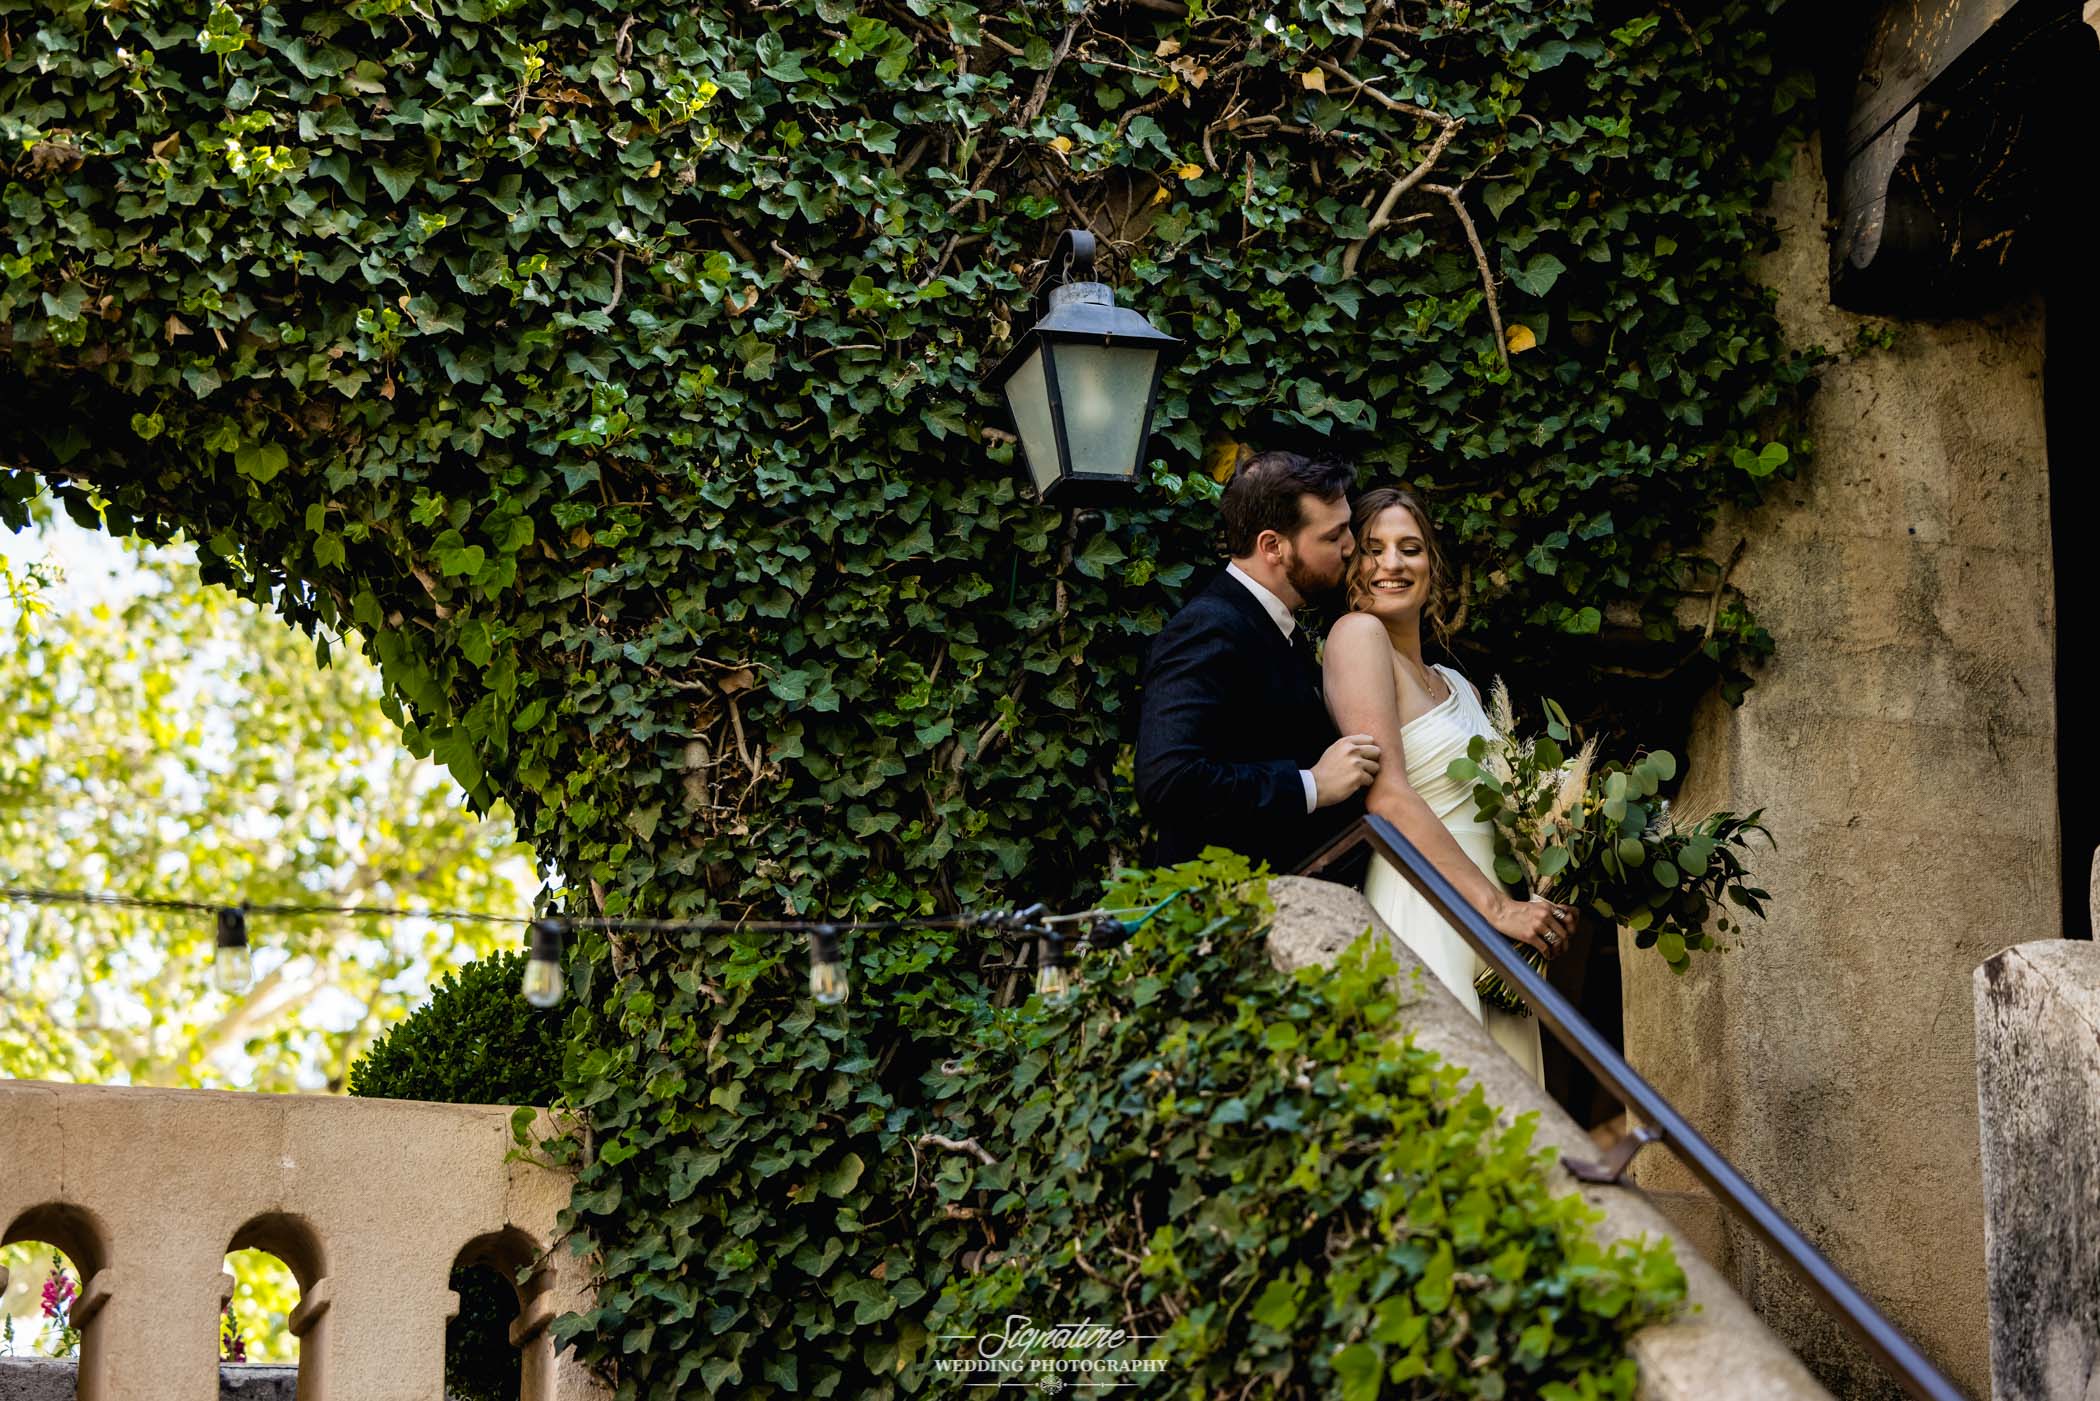 Groom kissing bride on cheek in front of vines